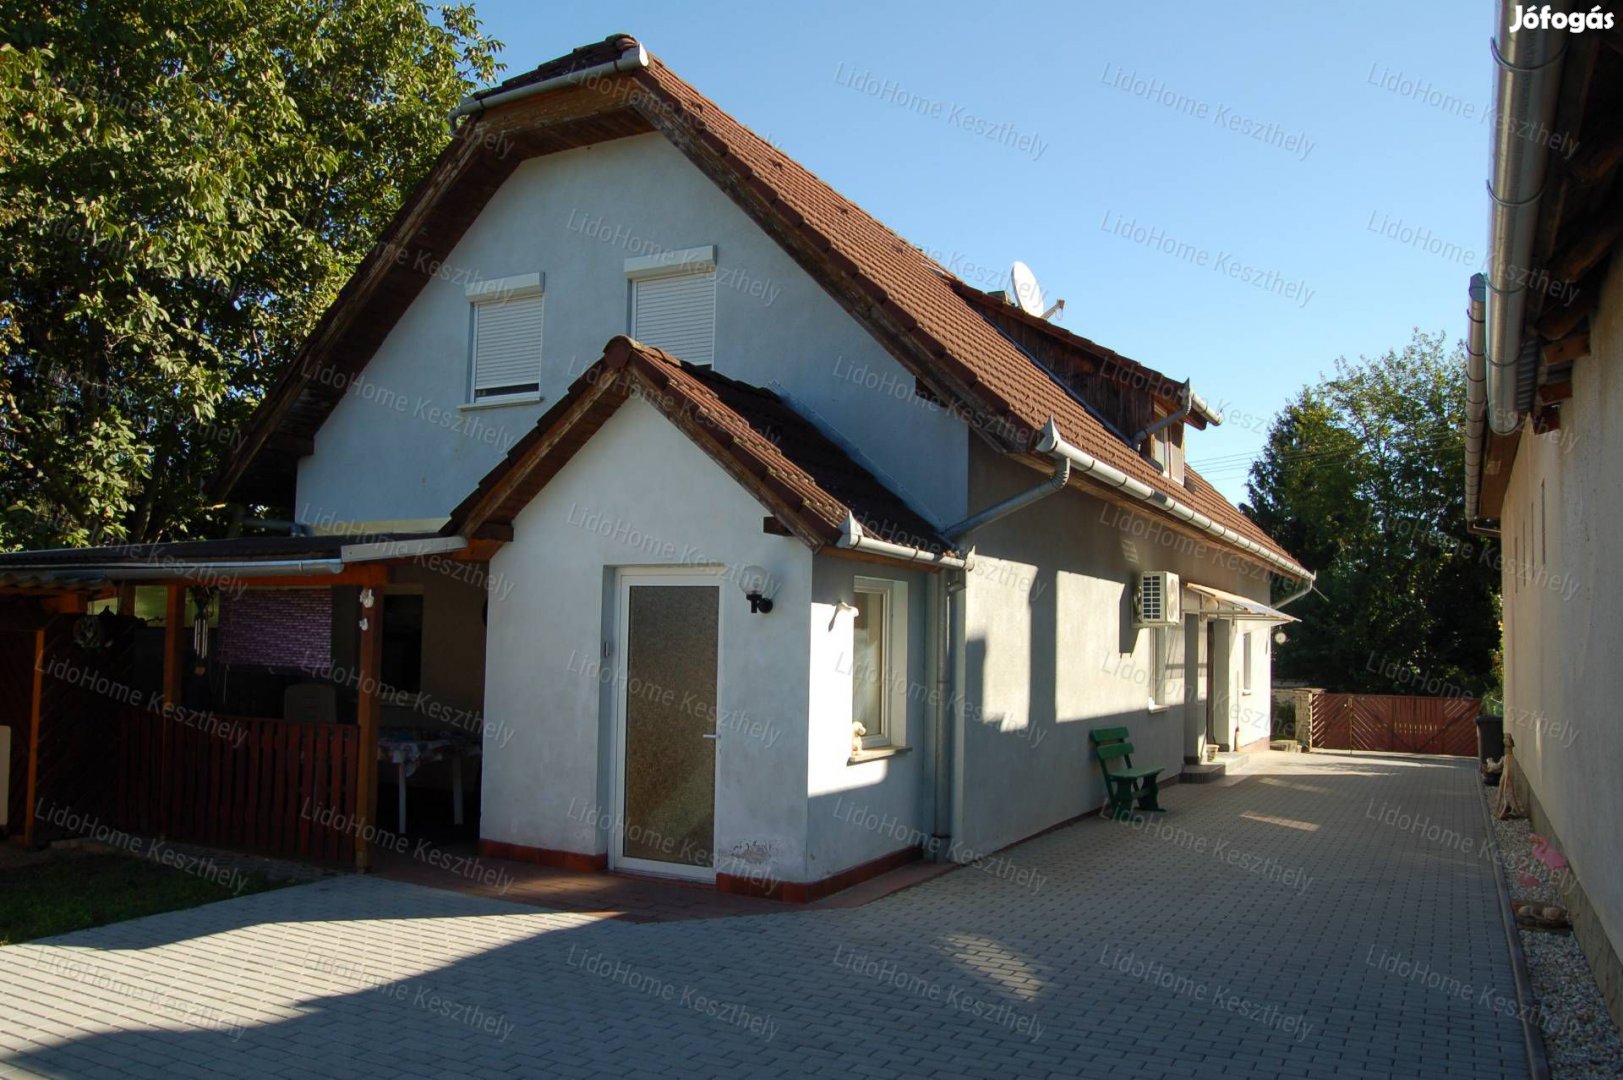 Eladó többlakrészes CSALÁDI HÁZ Balatonberényben.